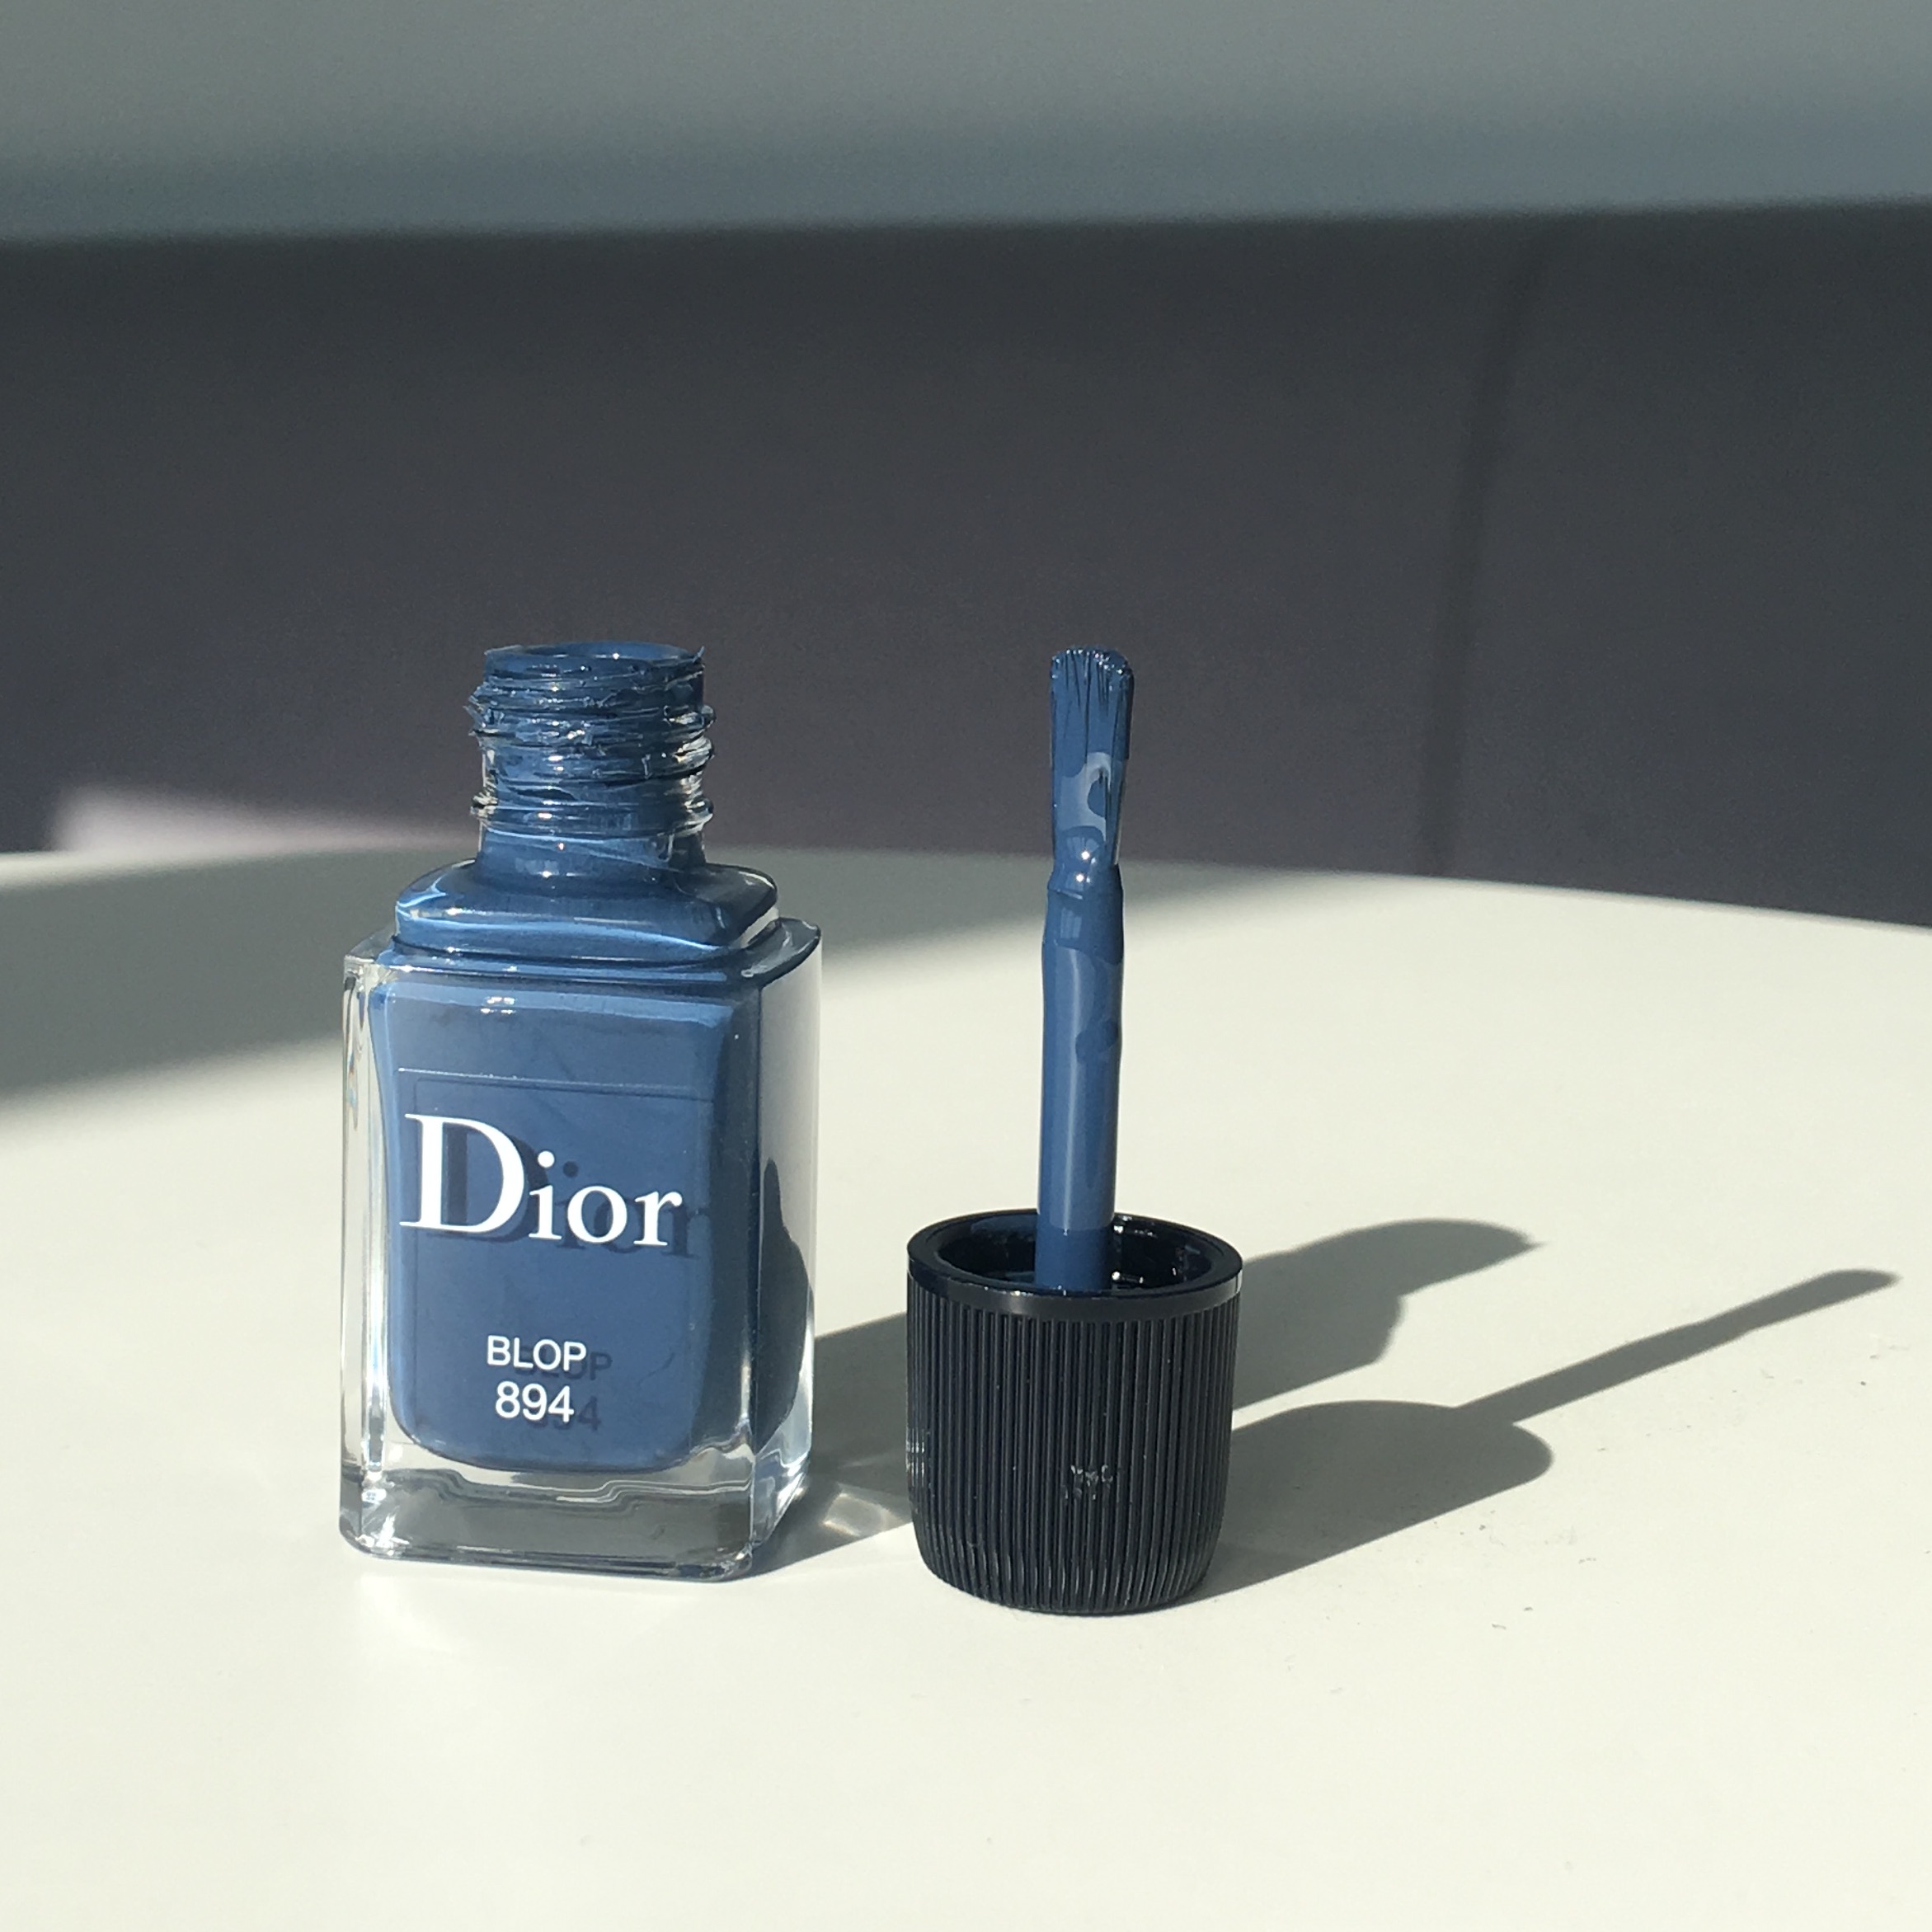 dior blop nail polish